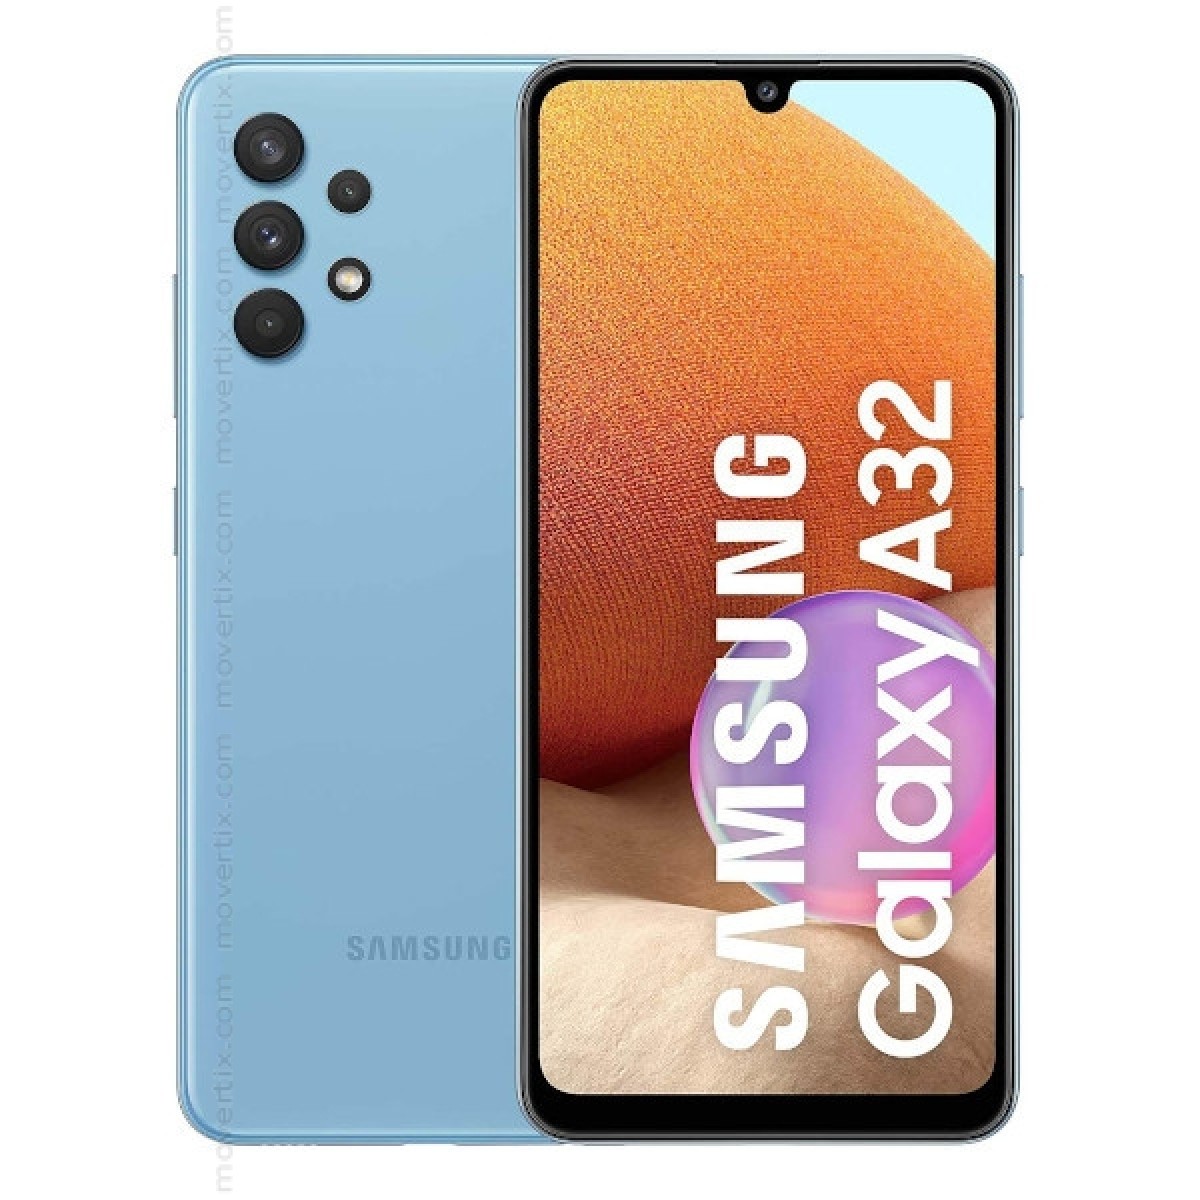 Samsung Galaxy A32 Dual SIM Awesome Blue 128GB and 4GB RAM - SM-A325F ...
